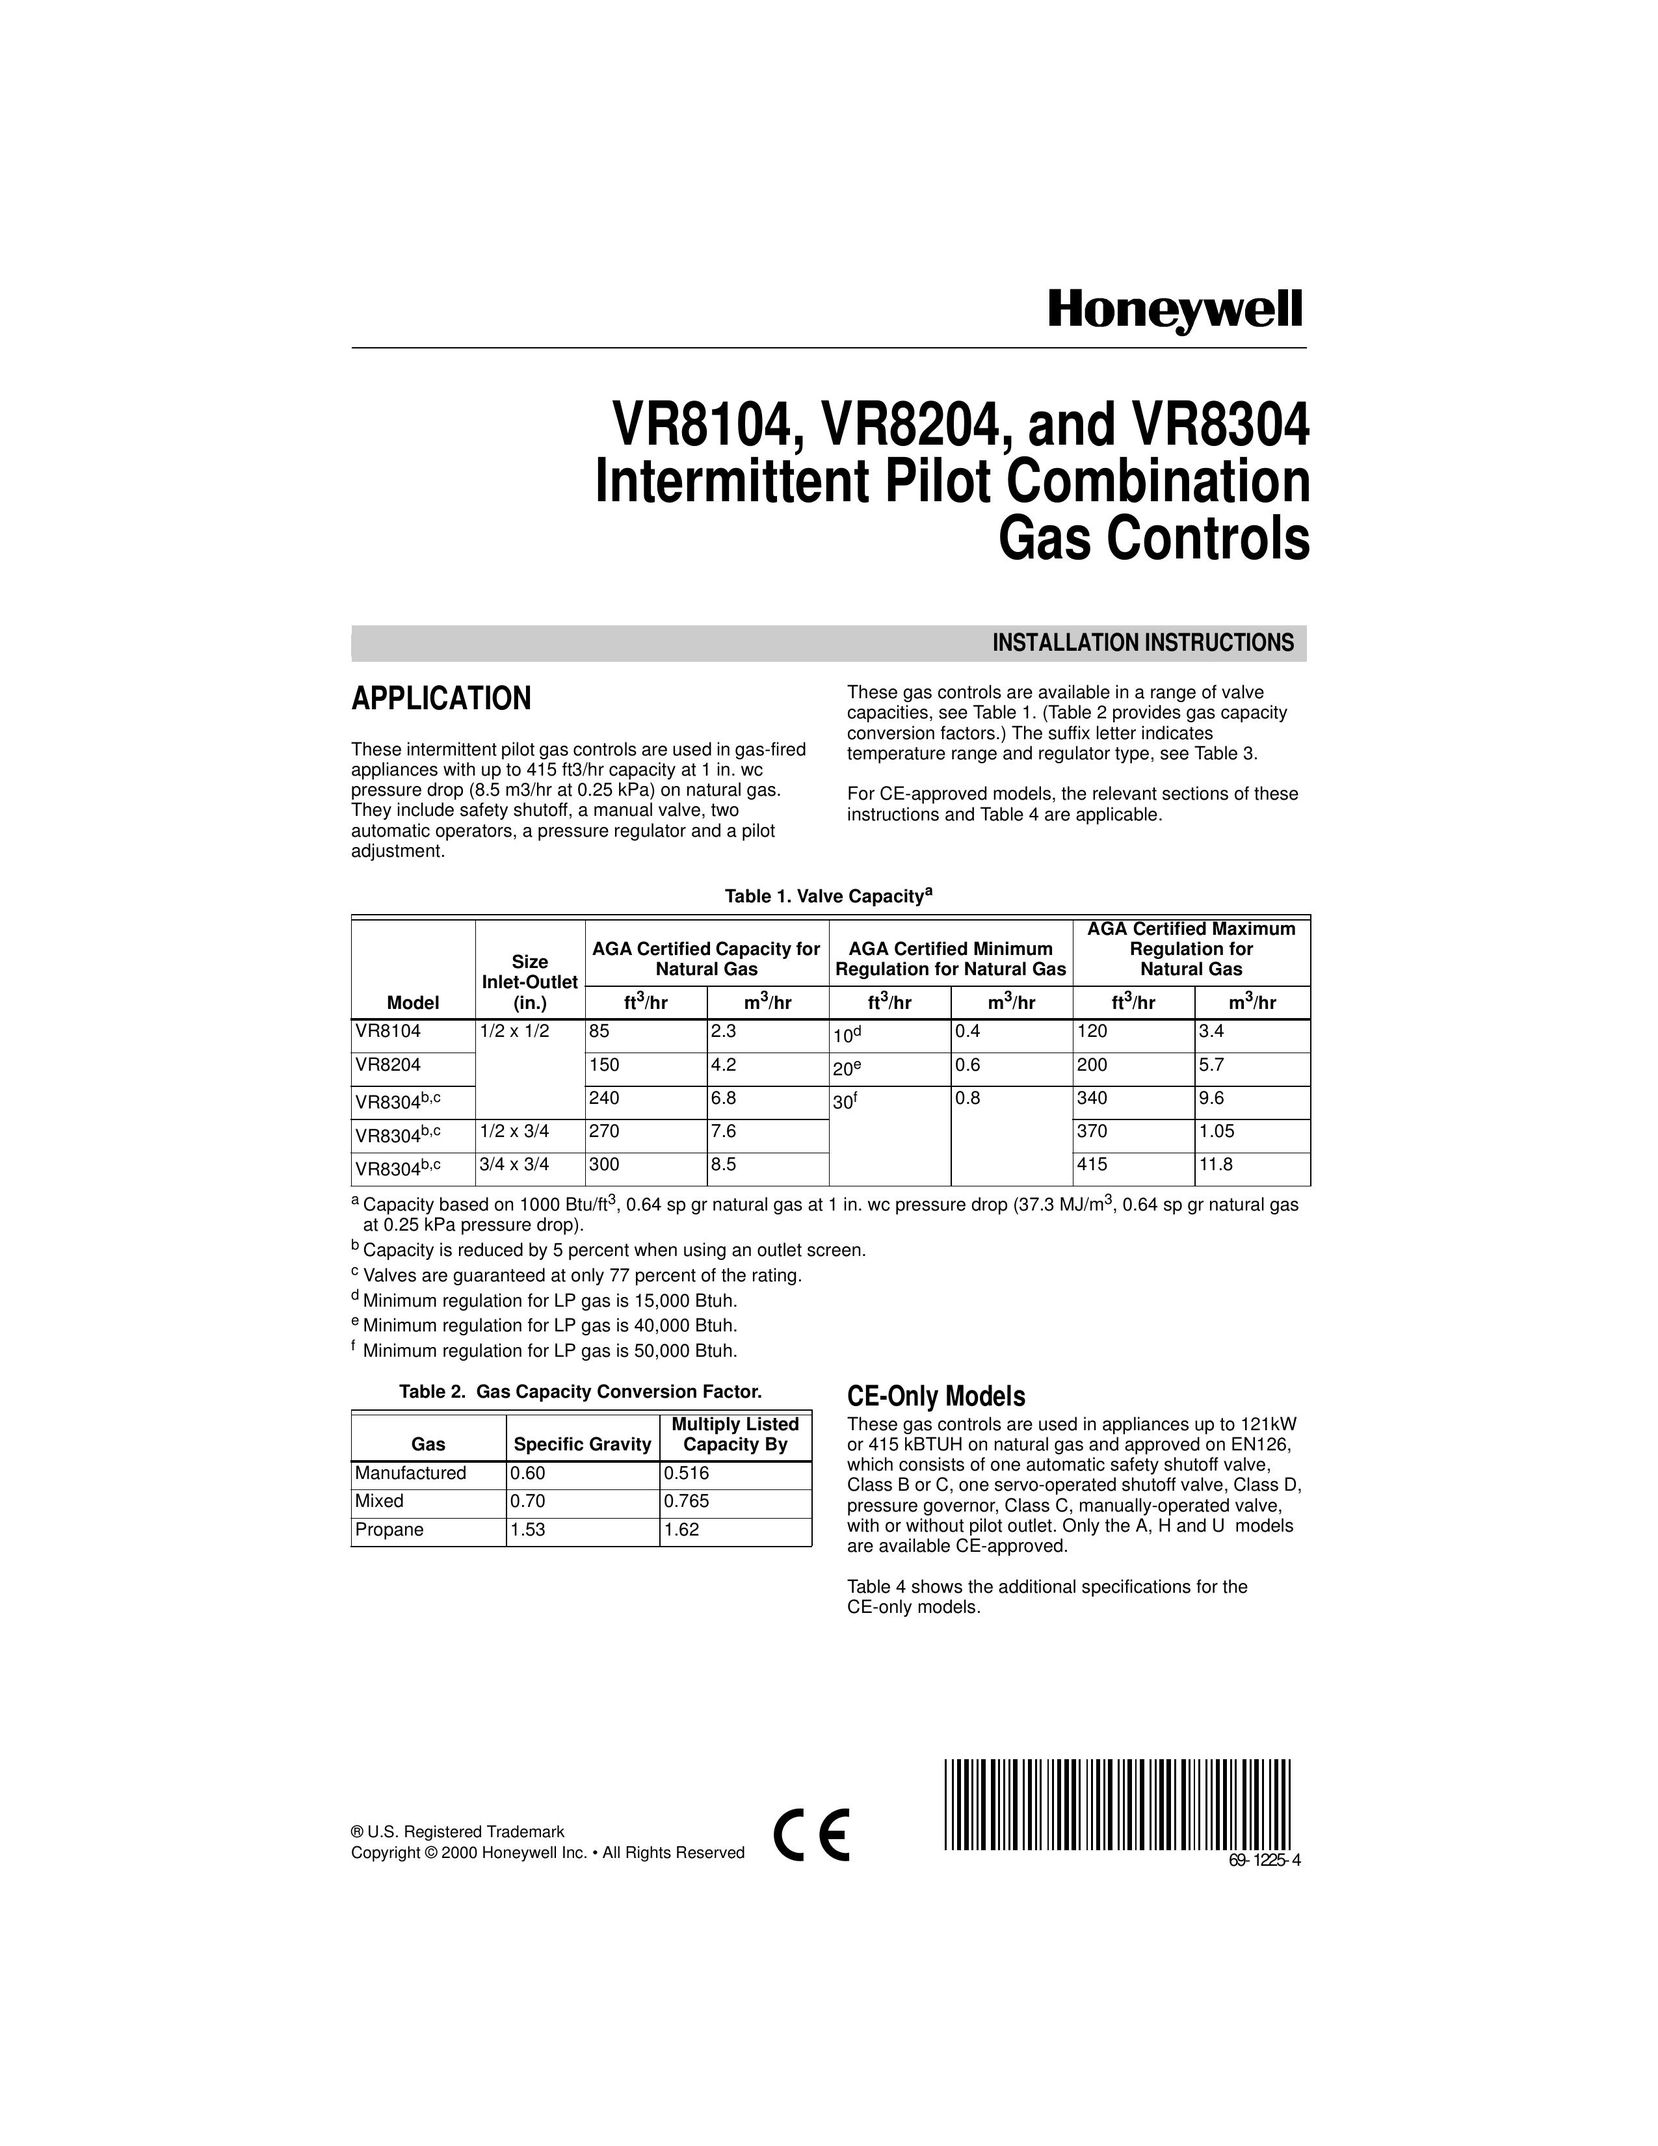 Honeywell VR8304 Boiler User Manual